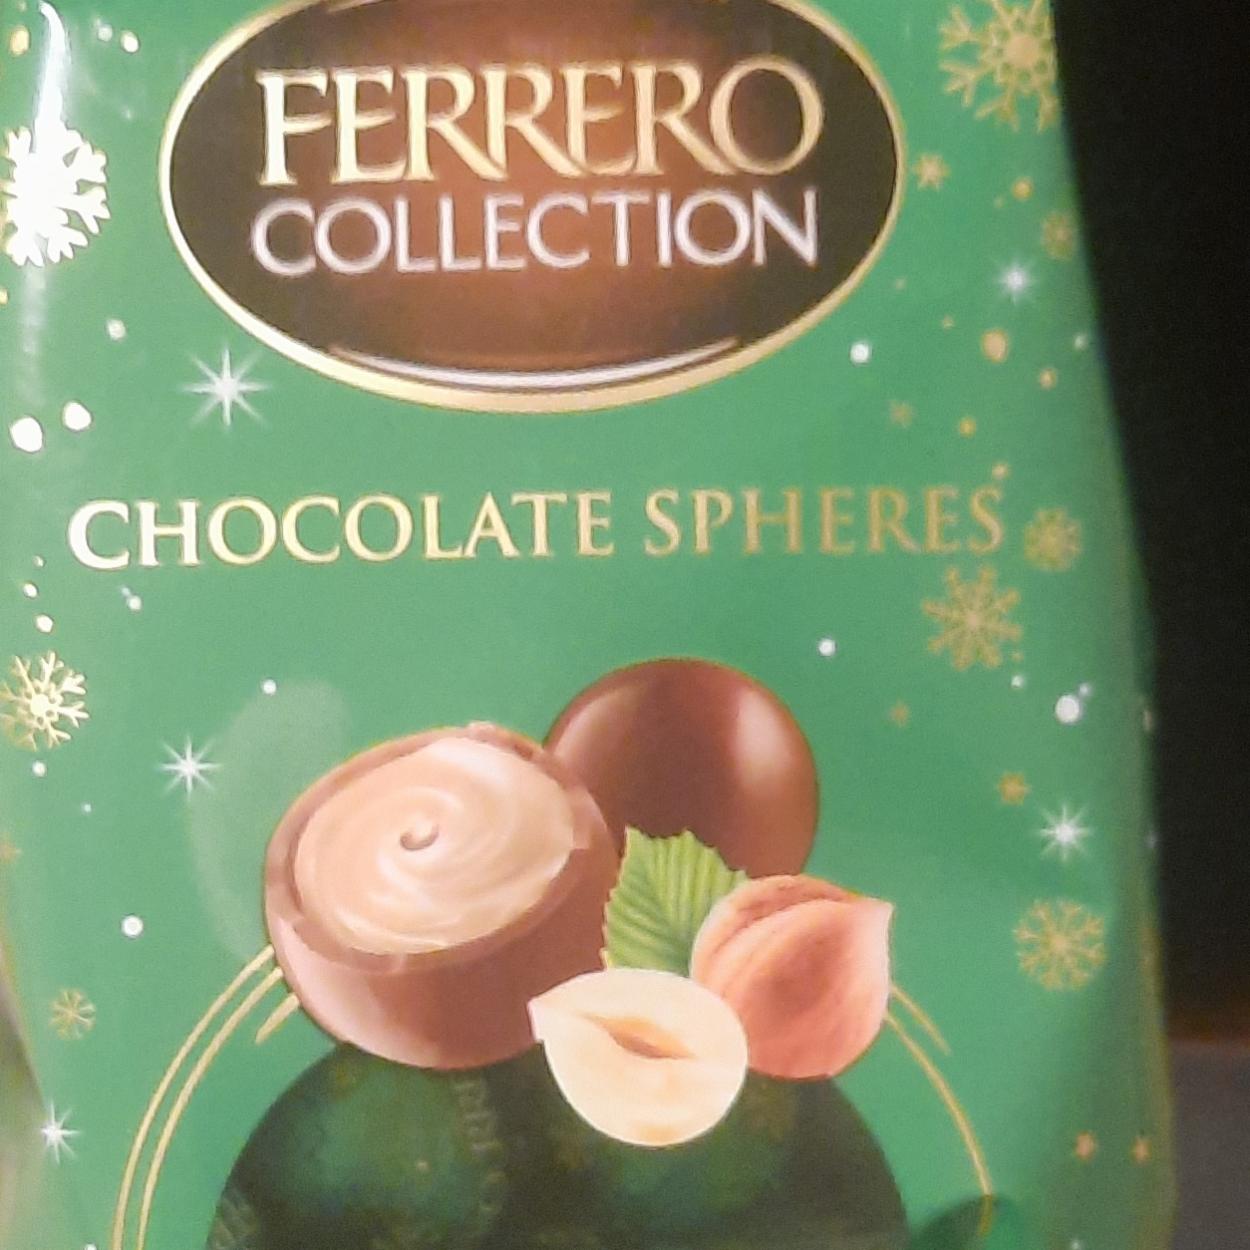 Фото - Chocolate spheres Hazelnut Ferrero collection